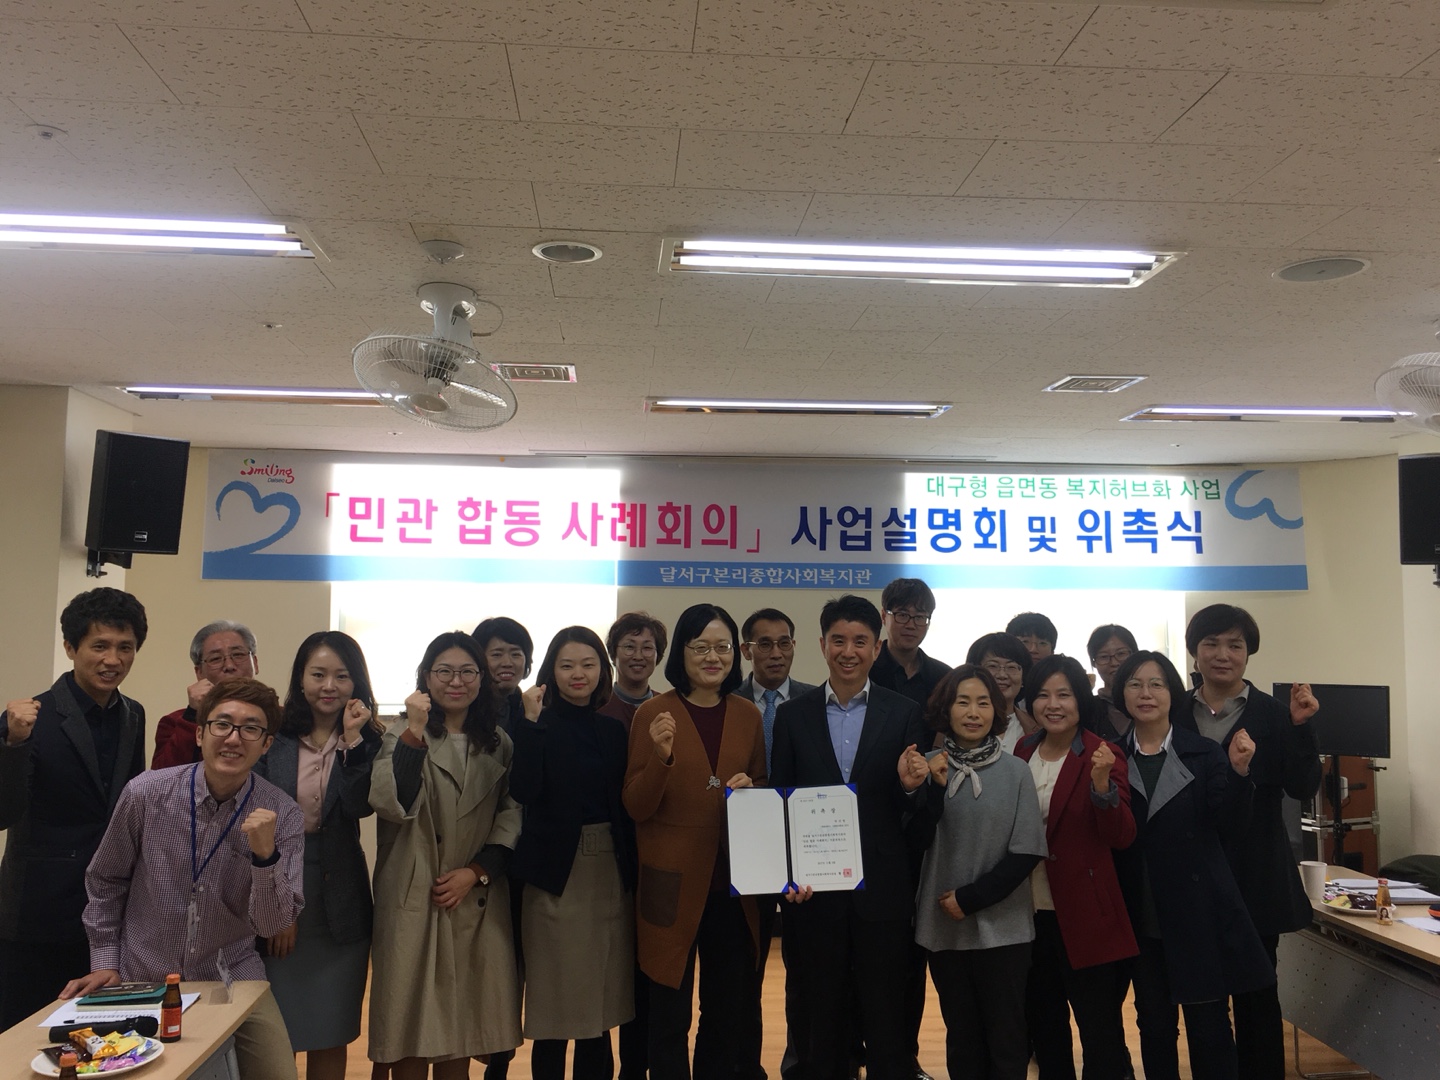 2017년도 민관 합동 사례회의 사업설명회(위촉식)와 1회차 회의 개최